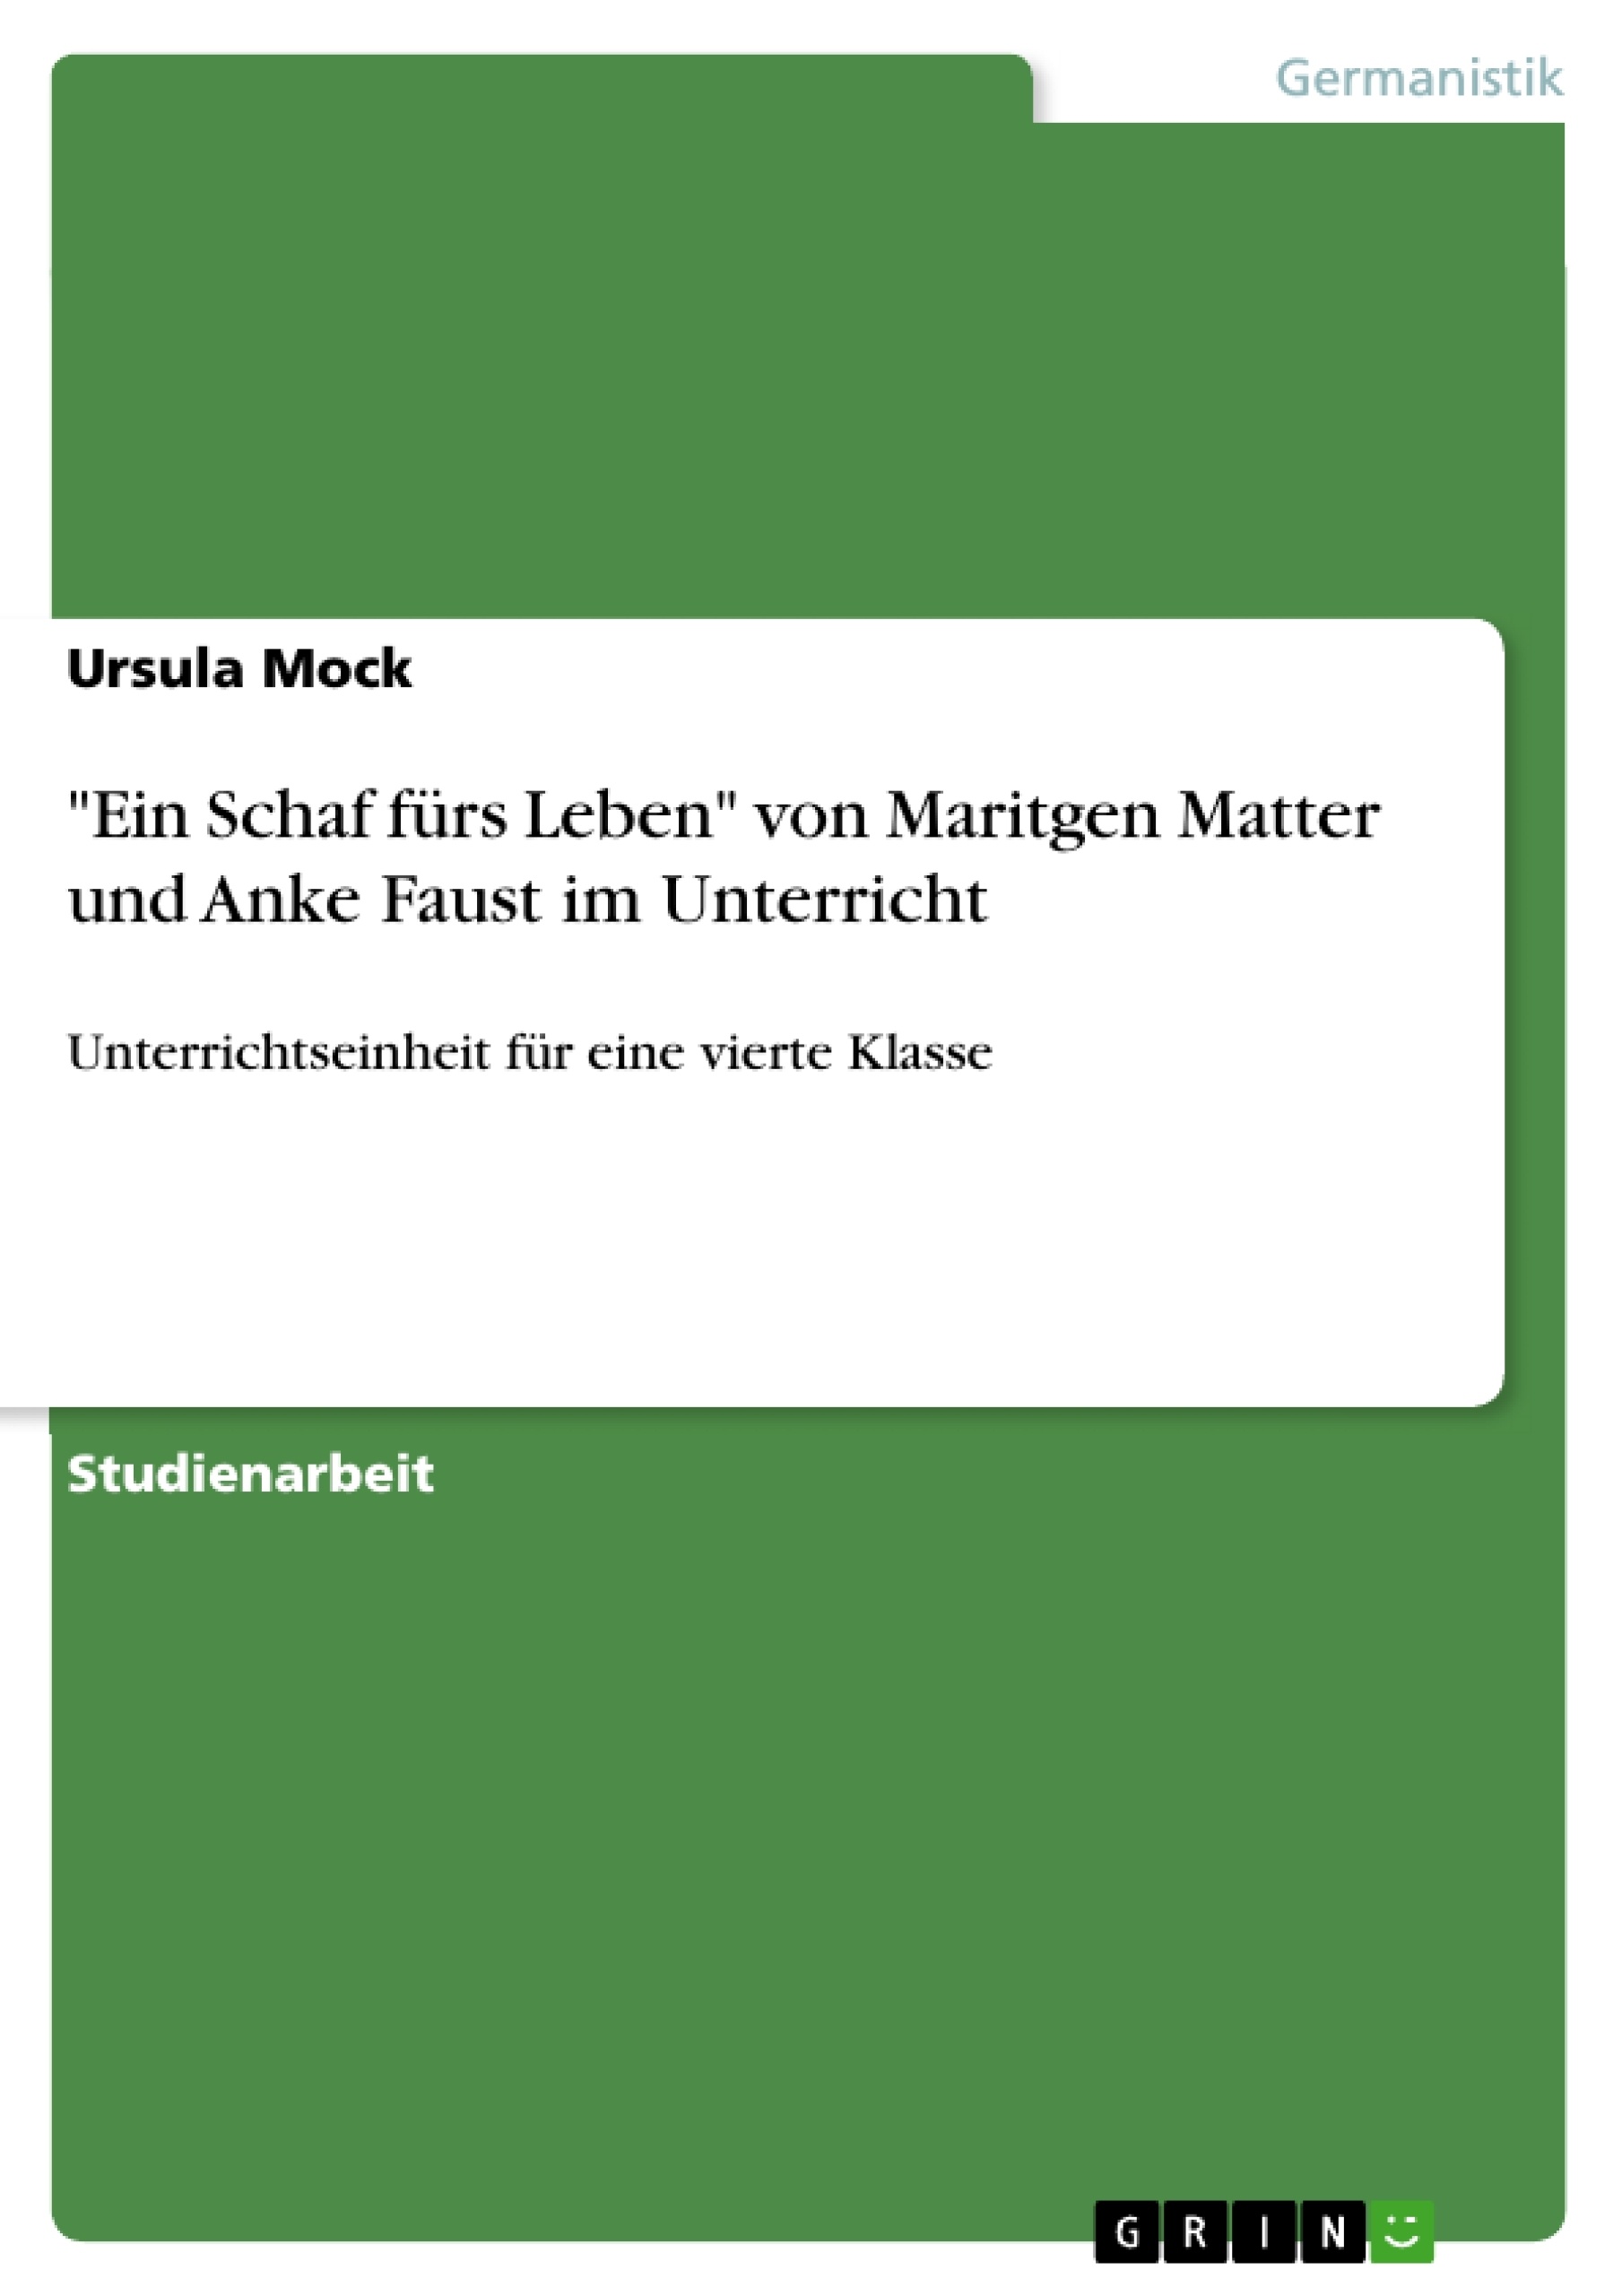 Titre: "Ein Schaf fürs Leben" von Maritgen Matter und Anke Faust im Unterricht